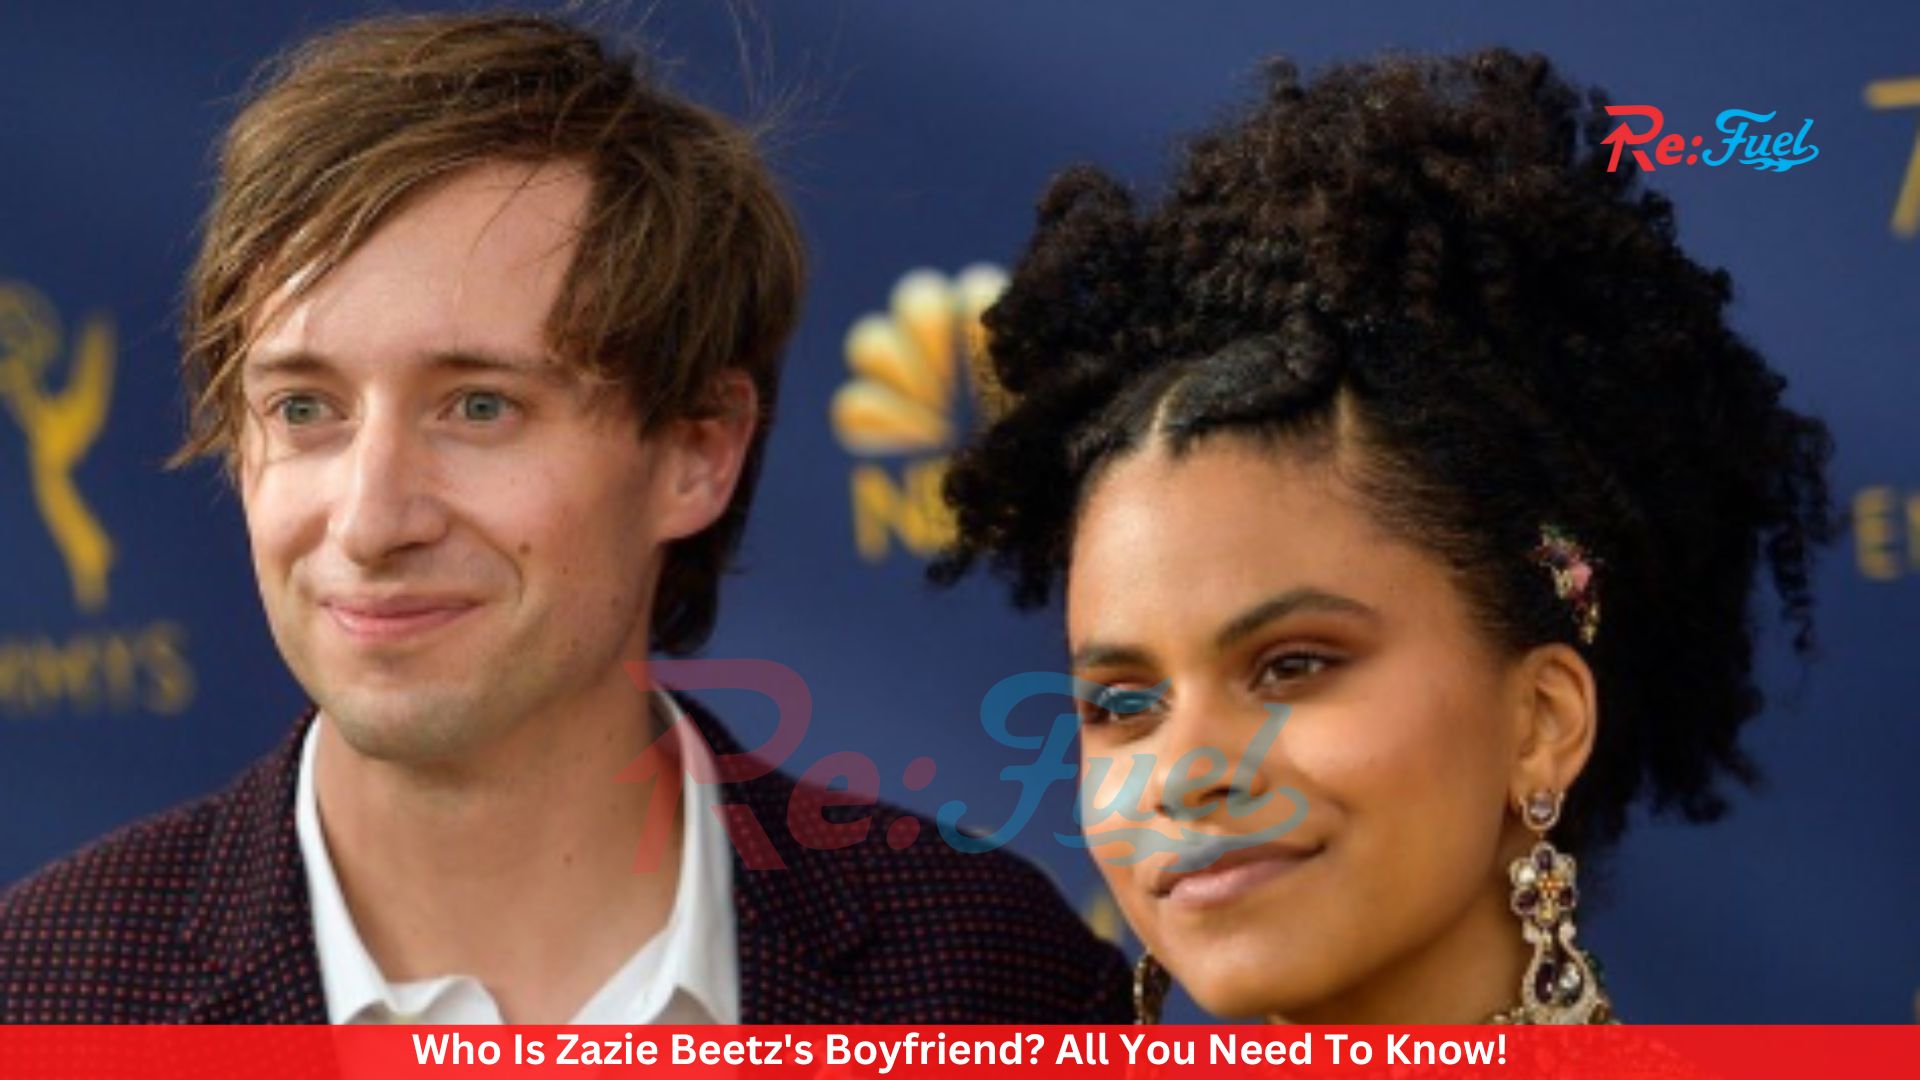 Who Is Zazie Beetz's Boyfriend? All You Need To Know!